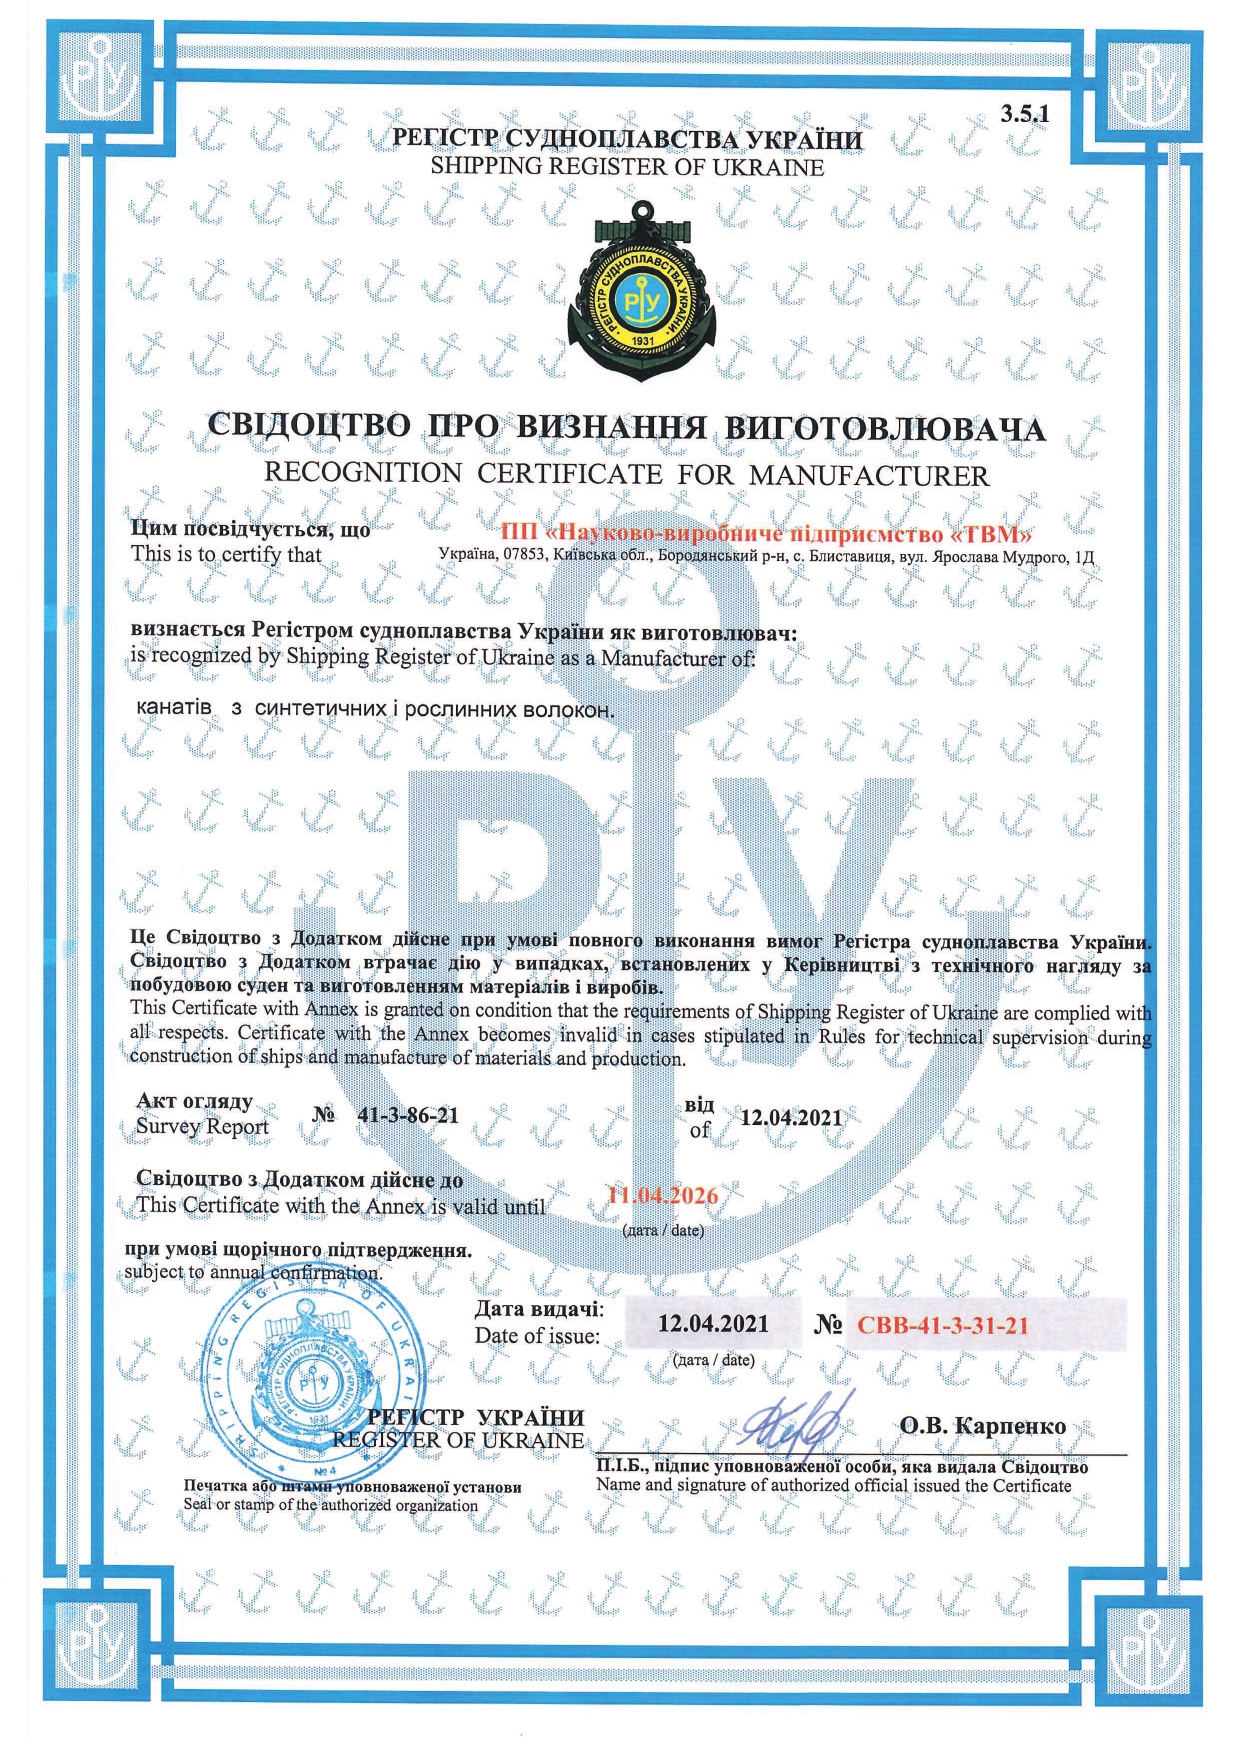 Сертификат РСУ ПП НВП ТВМ.jpg